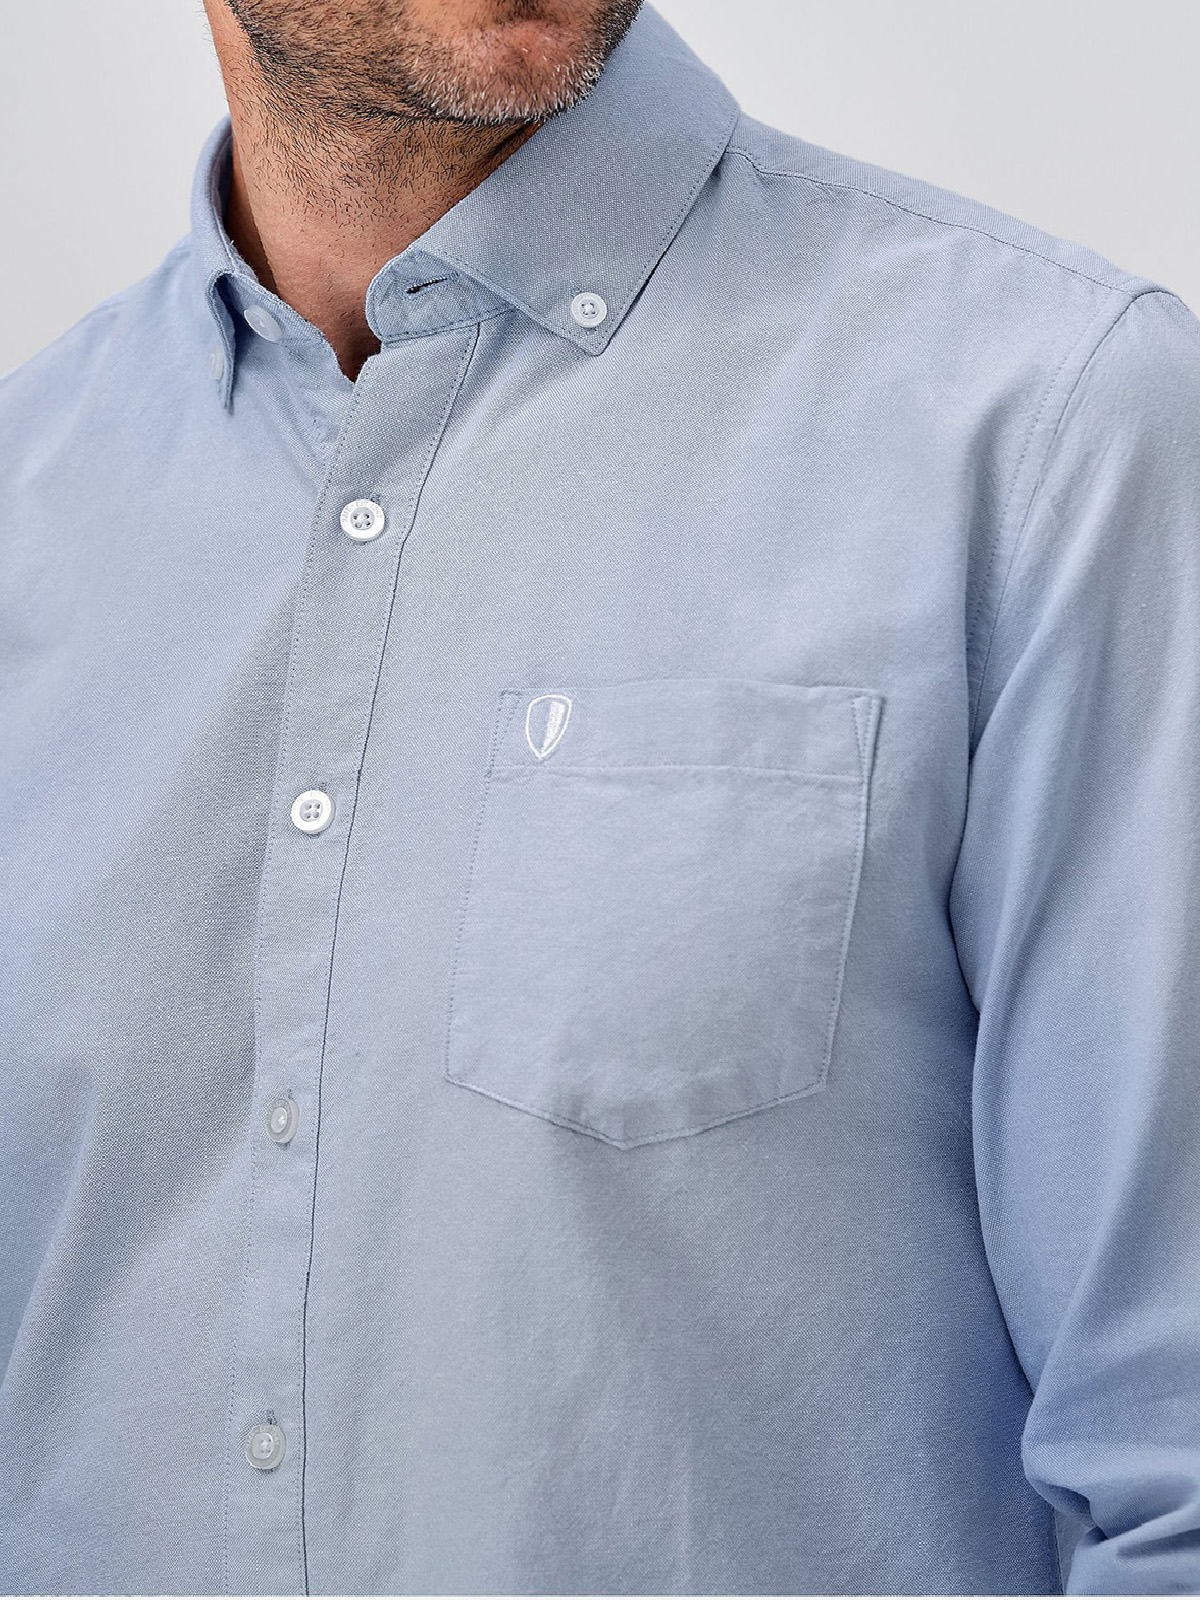 Ellos - - Ellos SKY-BLUE Mens Pure Cotton Oxford Shirt - Plus Size 2X